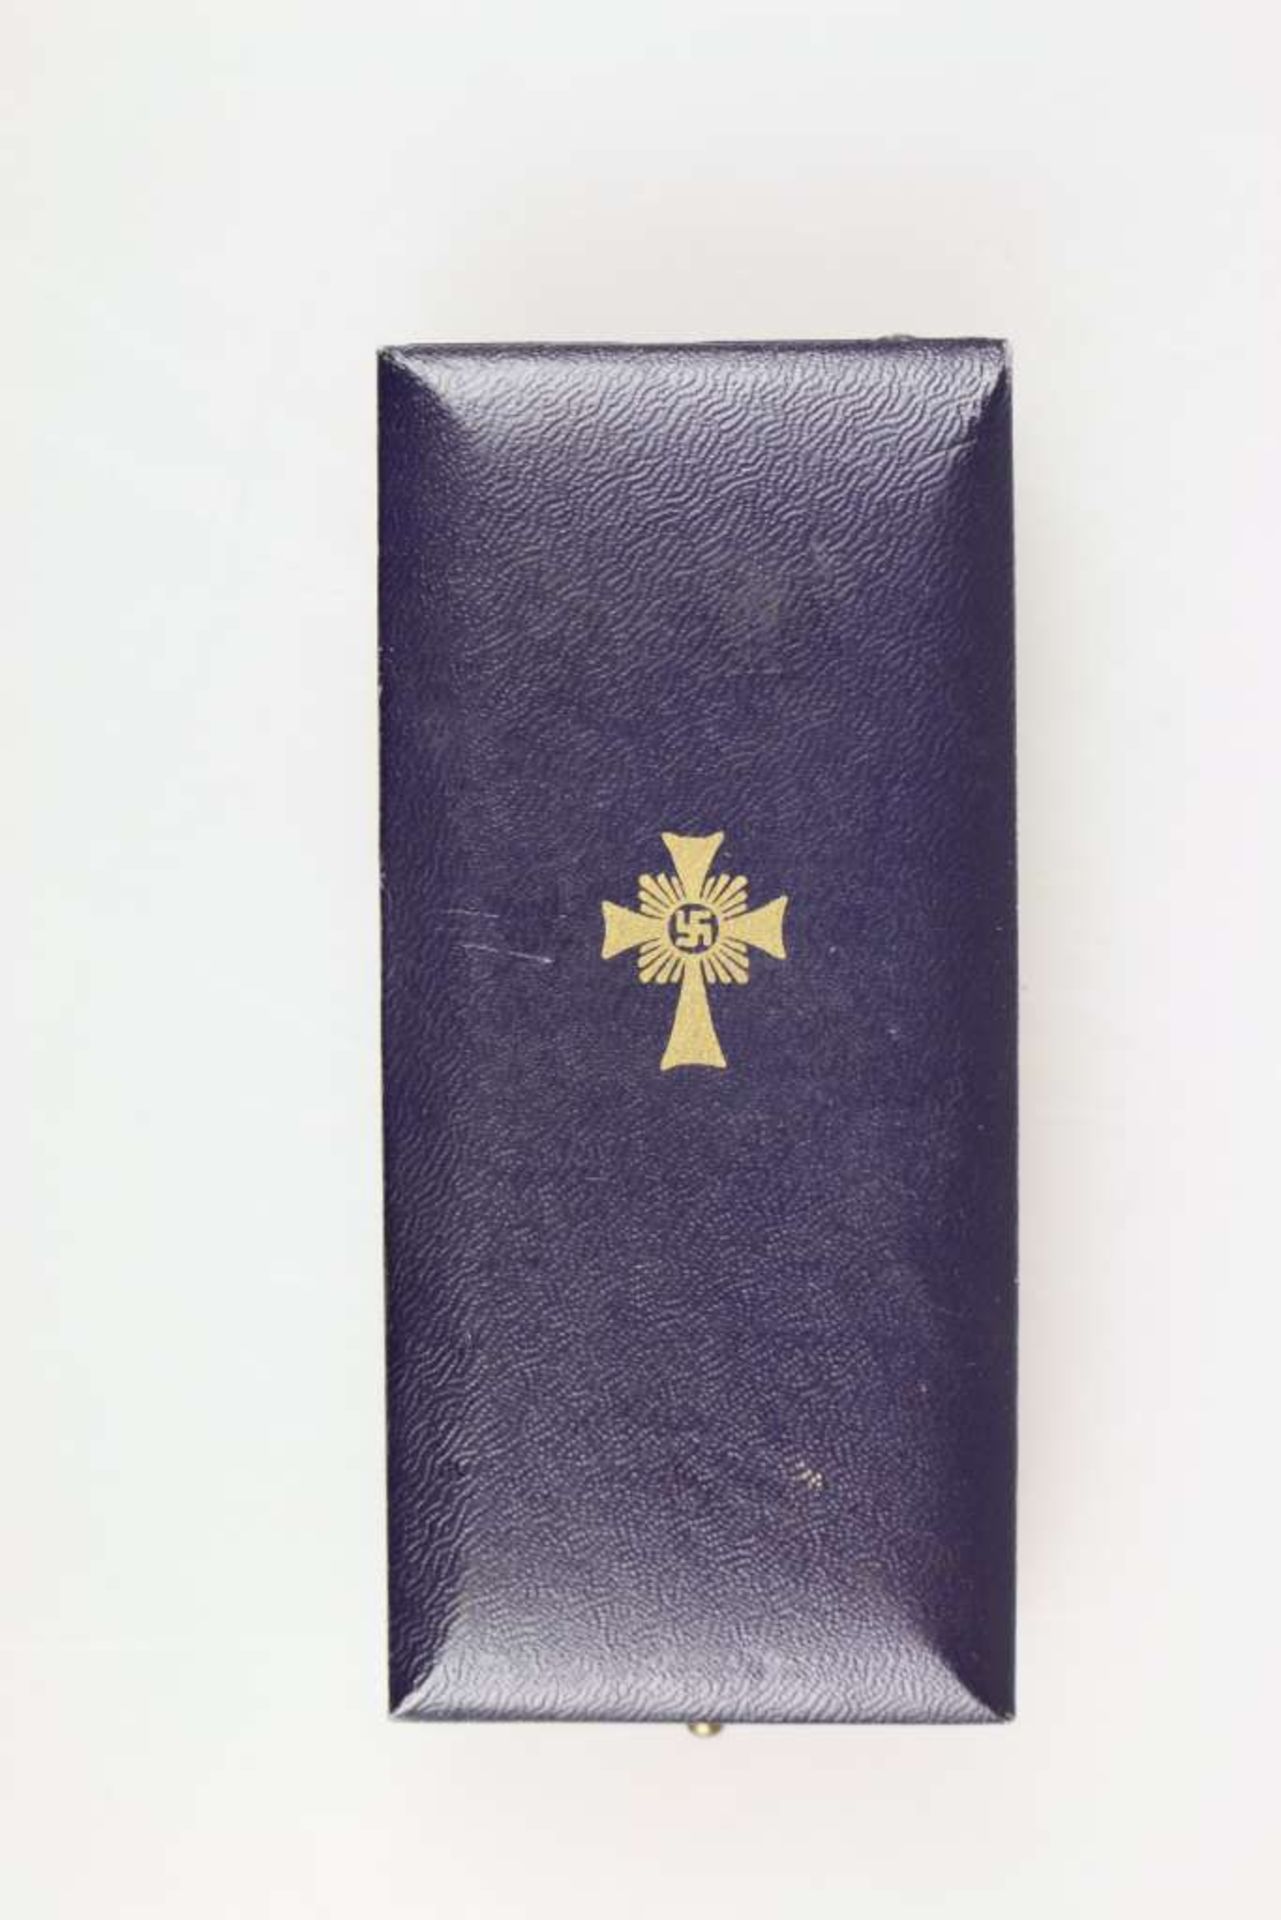 Mutterkreuz in Gold am Band, im original Verleihungsetui des Herstellers Carl Poellath, - Bild 4 aus 6